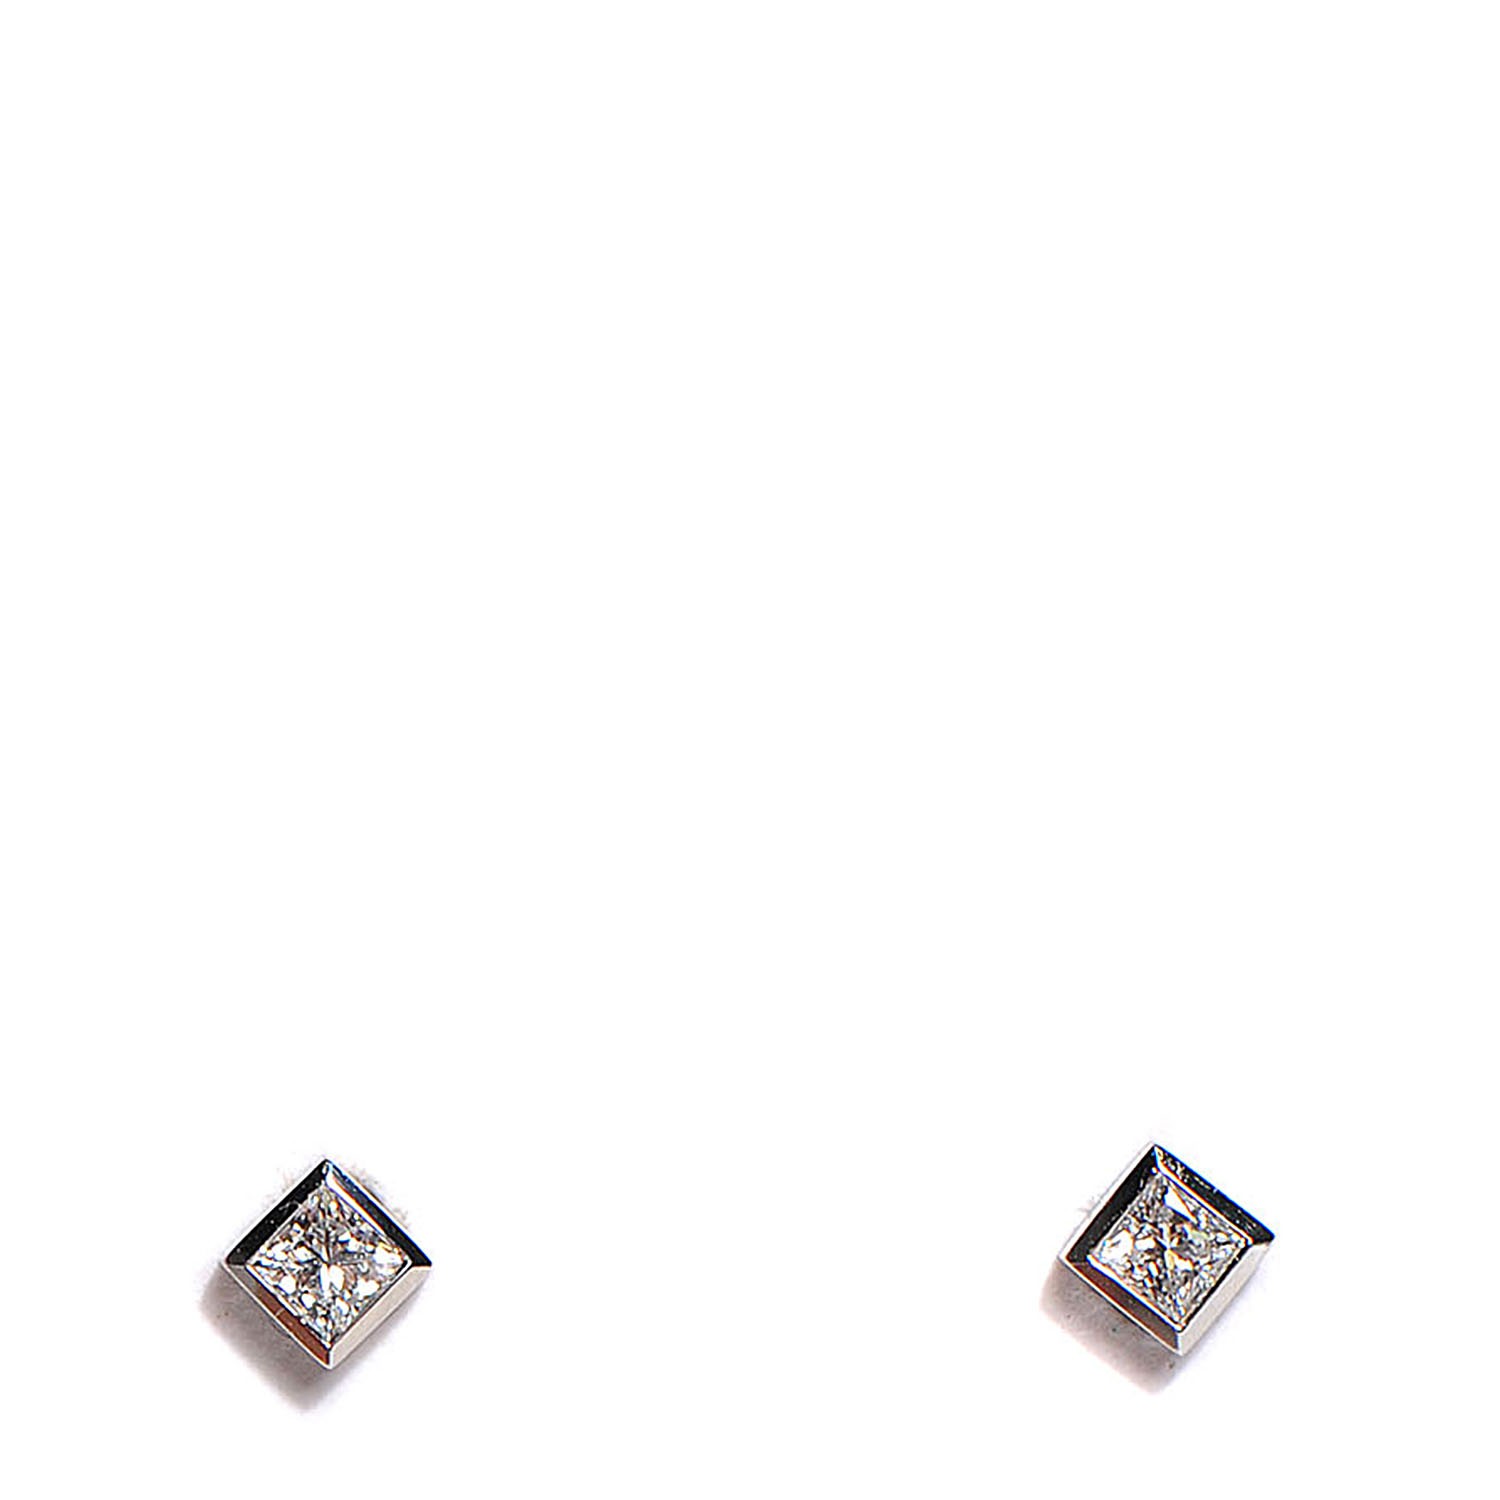 princess cut diamond earrings tiffany's